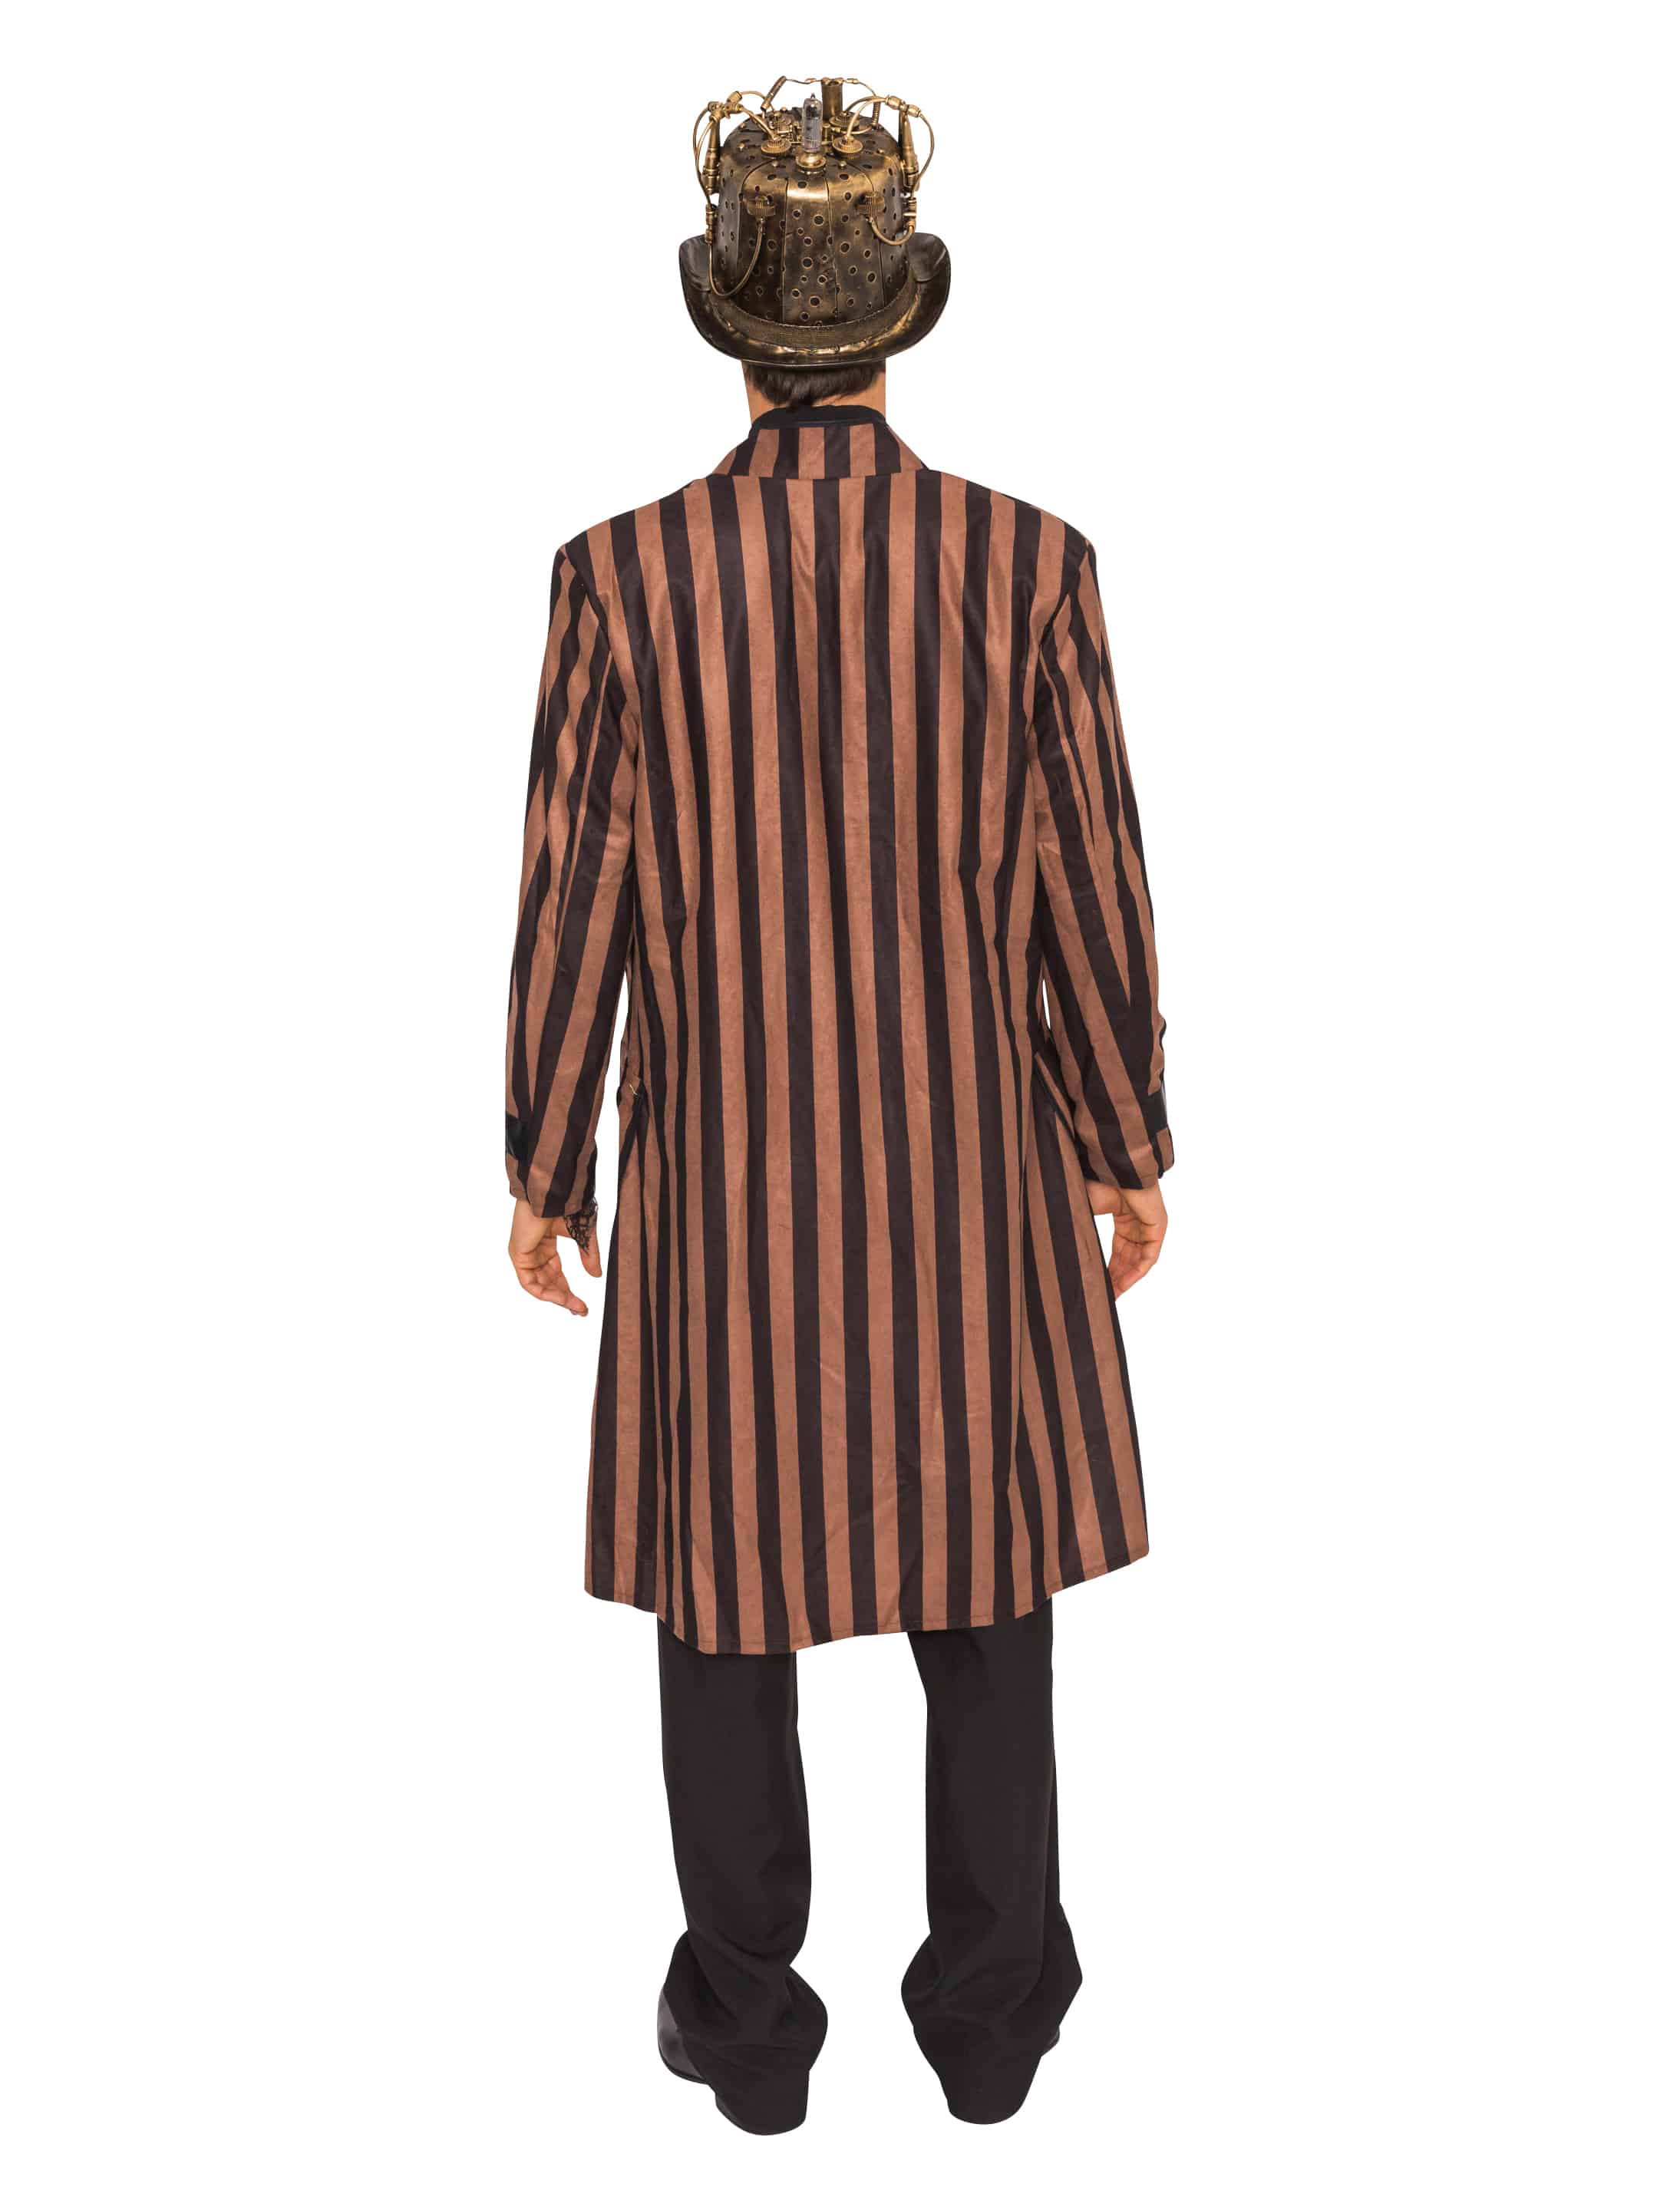 Mantel Steampunk mit Streifen Herren braun/schwarz XL